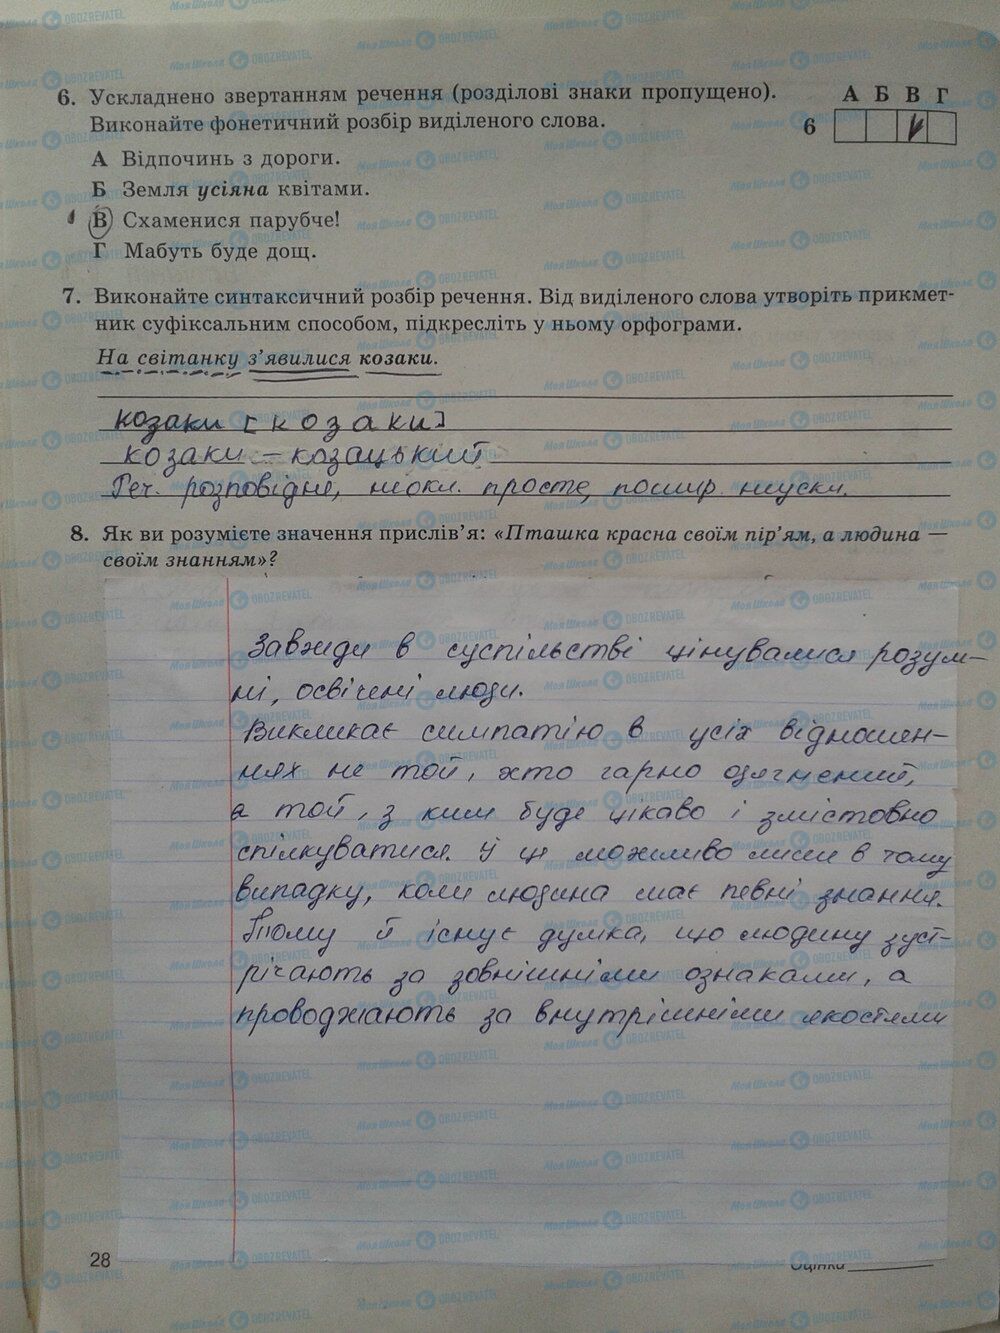 ГДЗ Укр мова 5 класс страница стр. 28